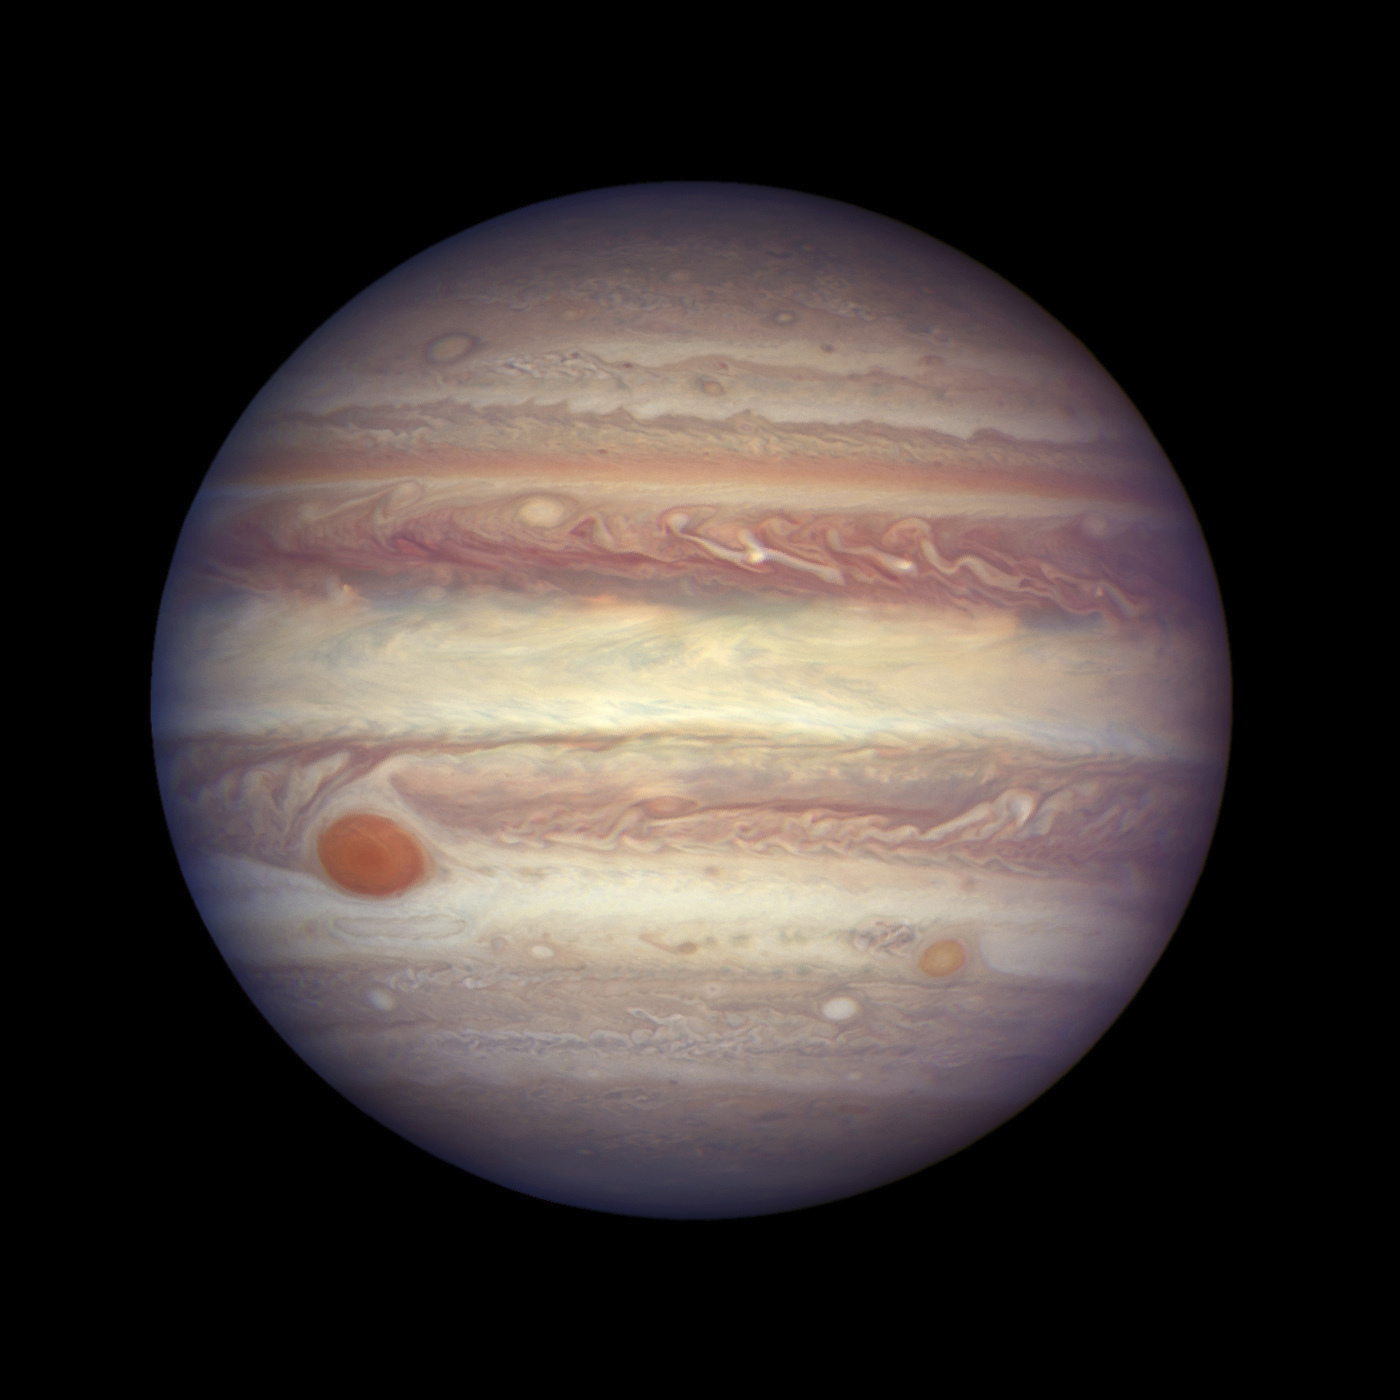 Снимка на Юпитер от тази година